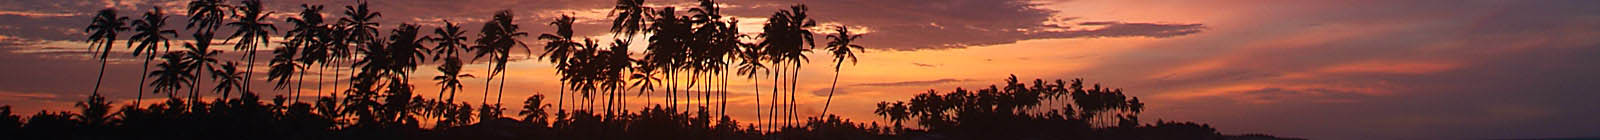 Sunset Banner Grand Popo, Benin.